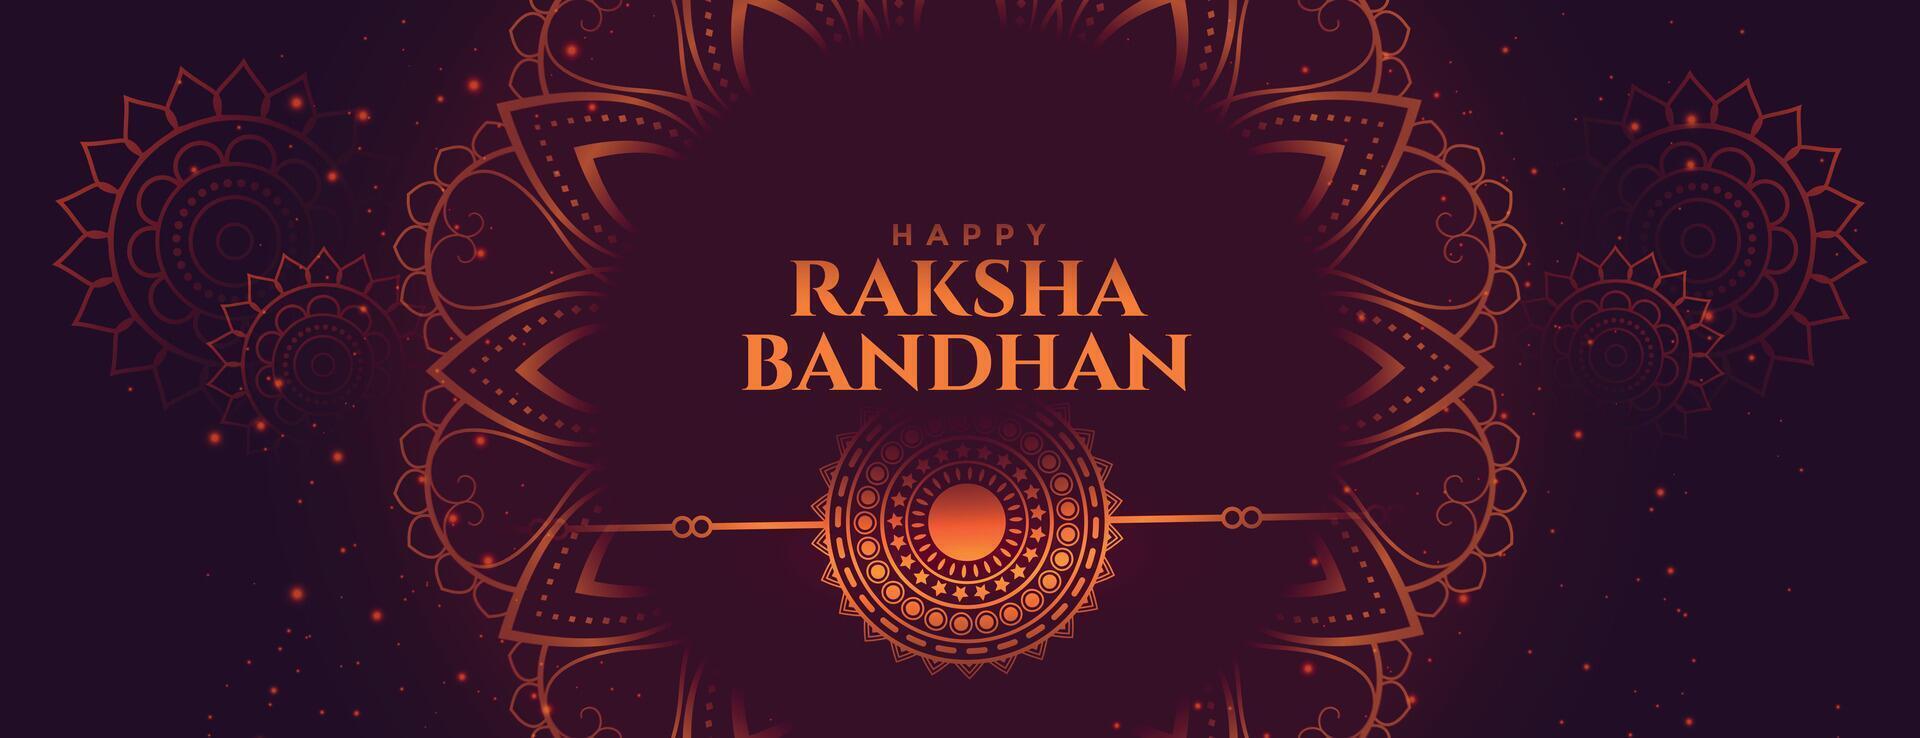 indian raksha bandhan festival decorative banner design vector